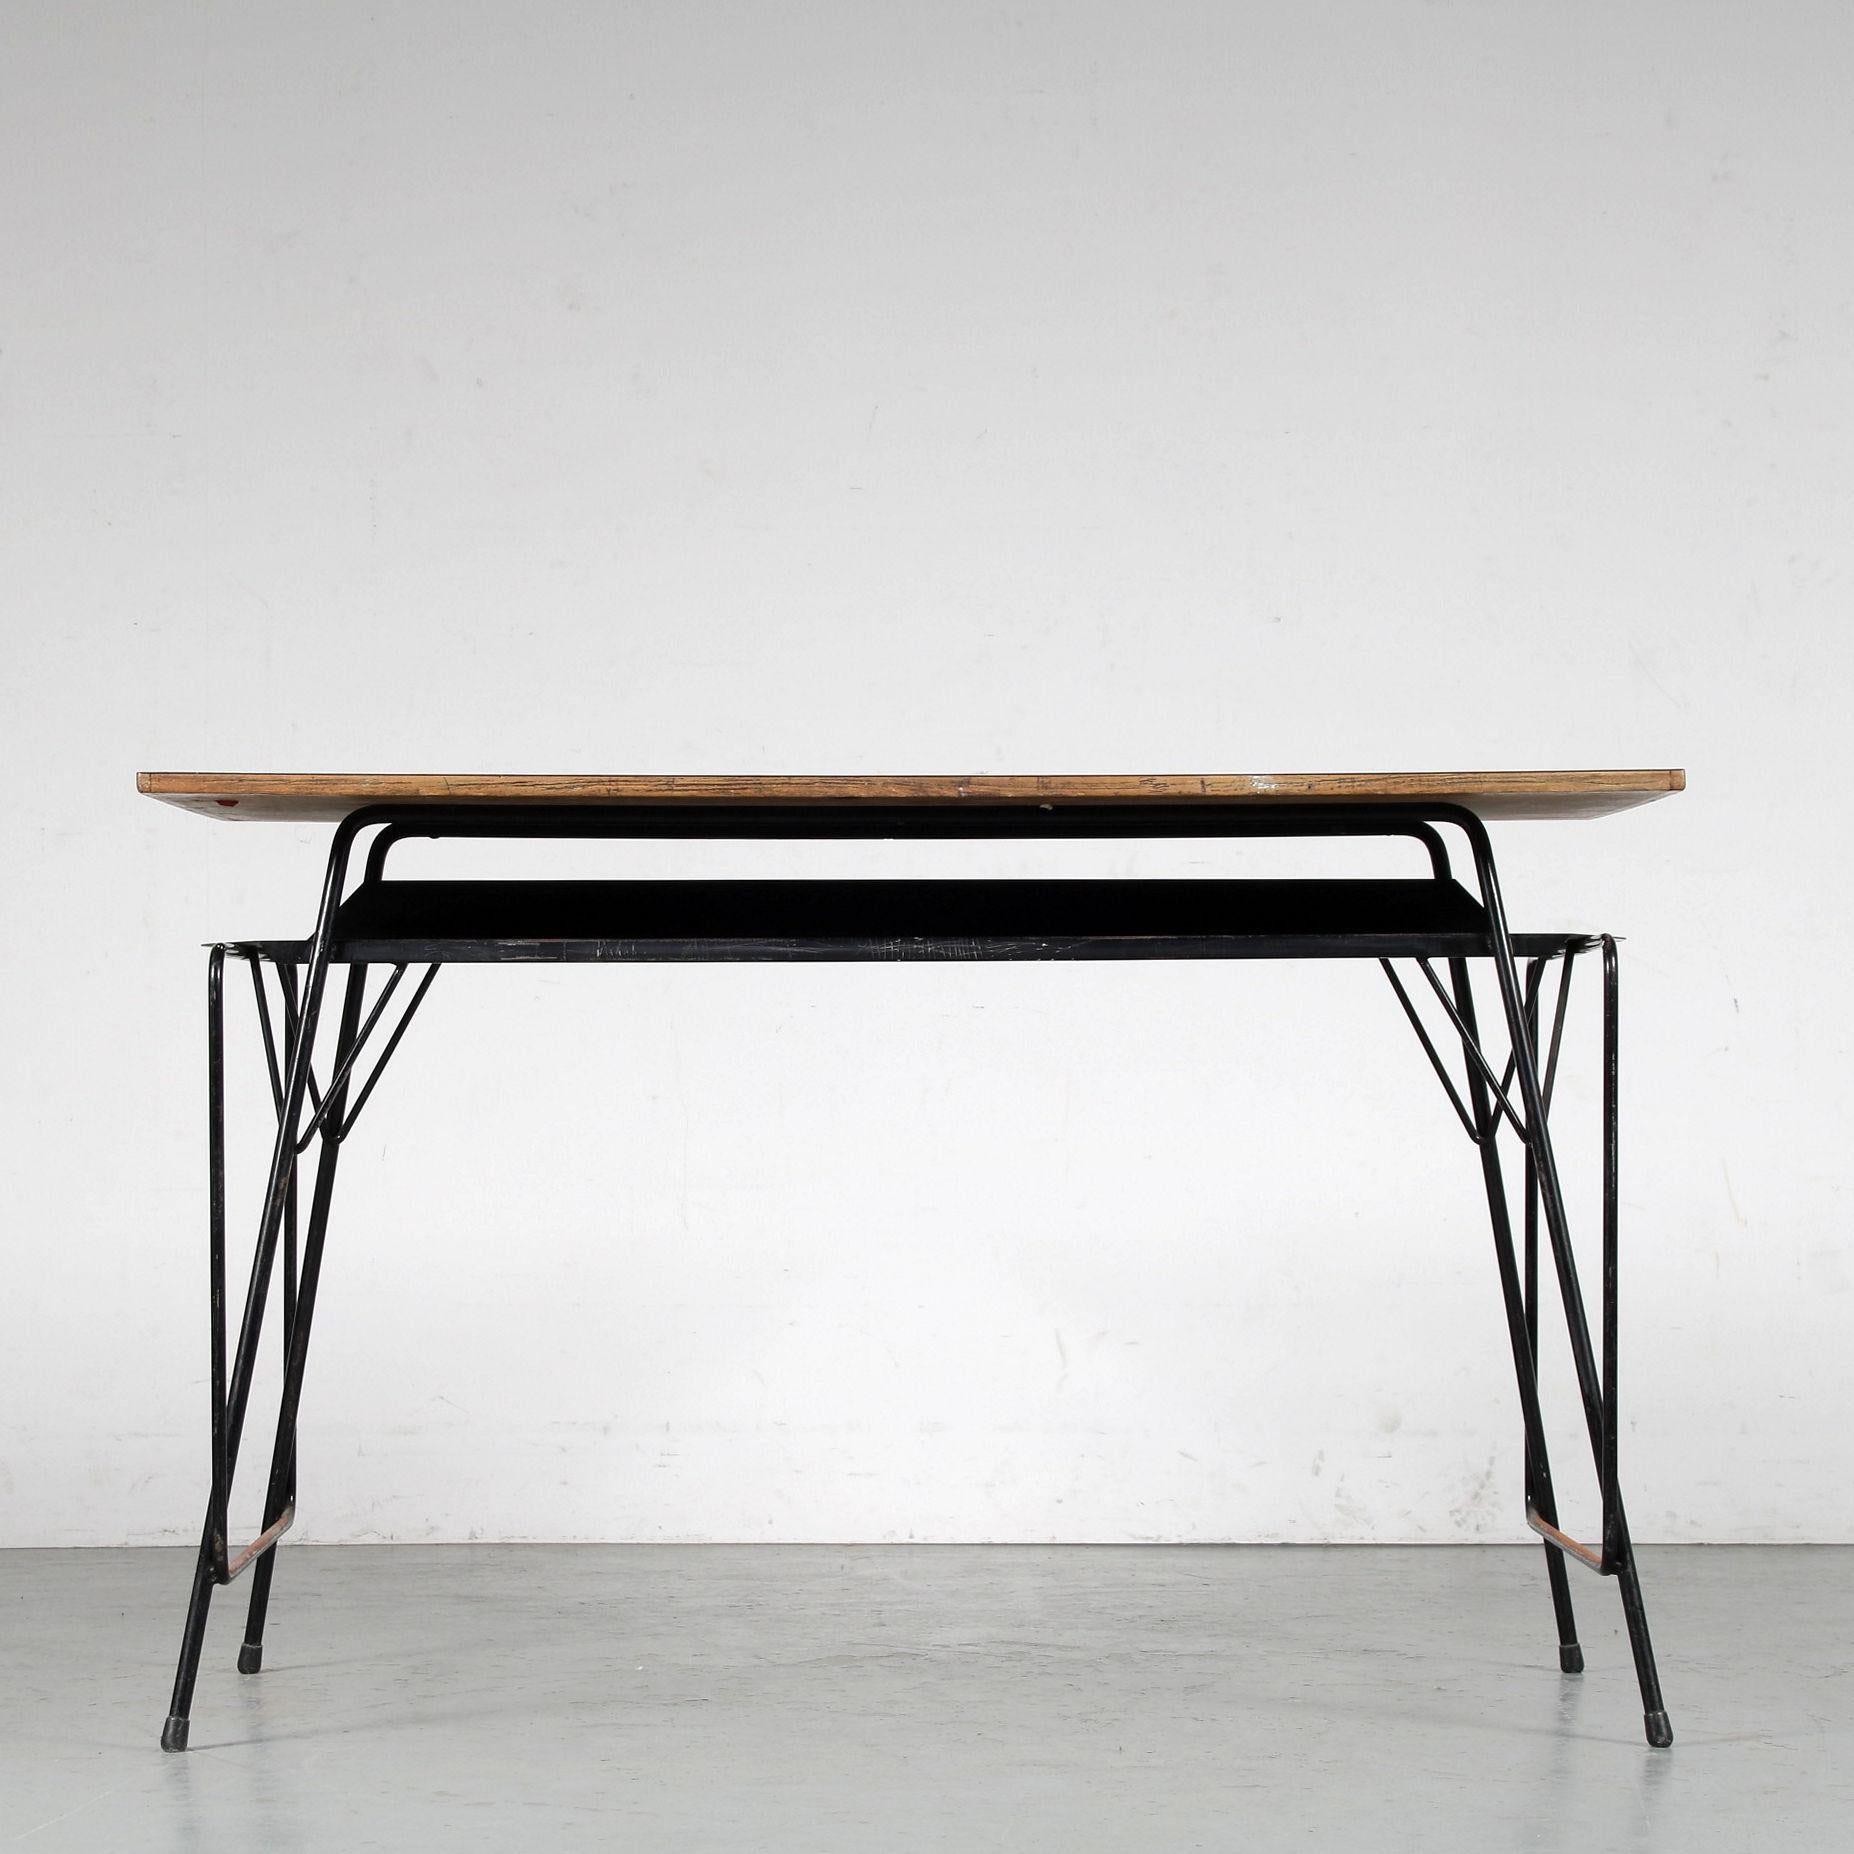 Un beau bureau d'enseignant conçu par Willy van der Meeren, fabriqué par Tubax en Belgique vers 1950.

La table a une fine base en métal laqué noir avec un plateau en formica gris. Sous le plateau, une étagère en métal noir permet de ranger les